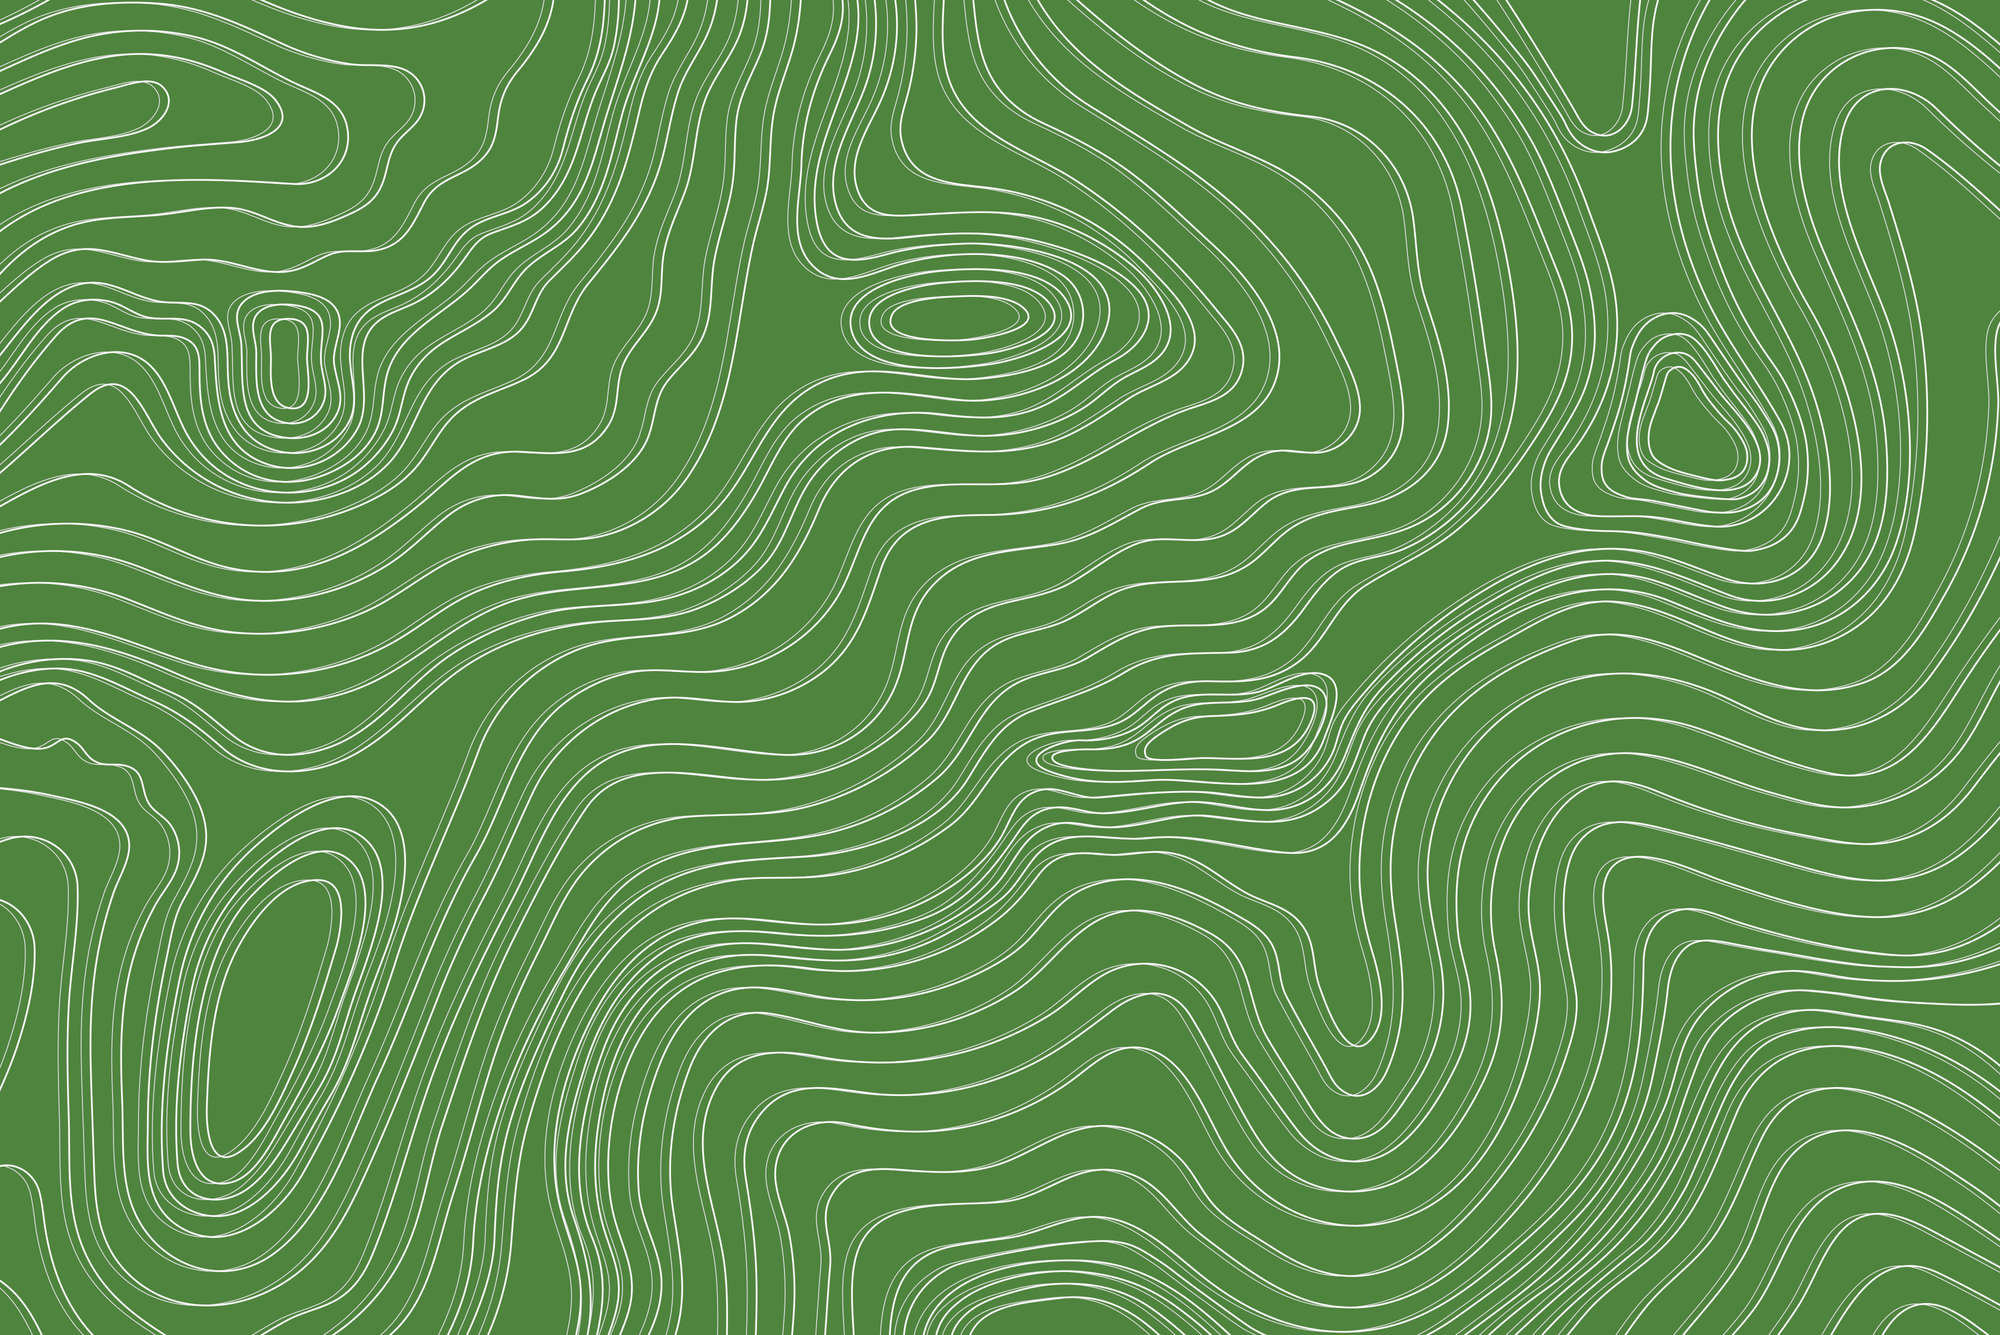             Ontwerpbehang golven en cirkels patroon groen op premium gladde fleece
        